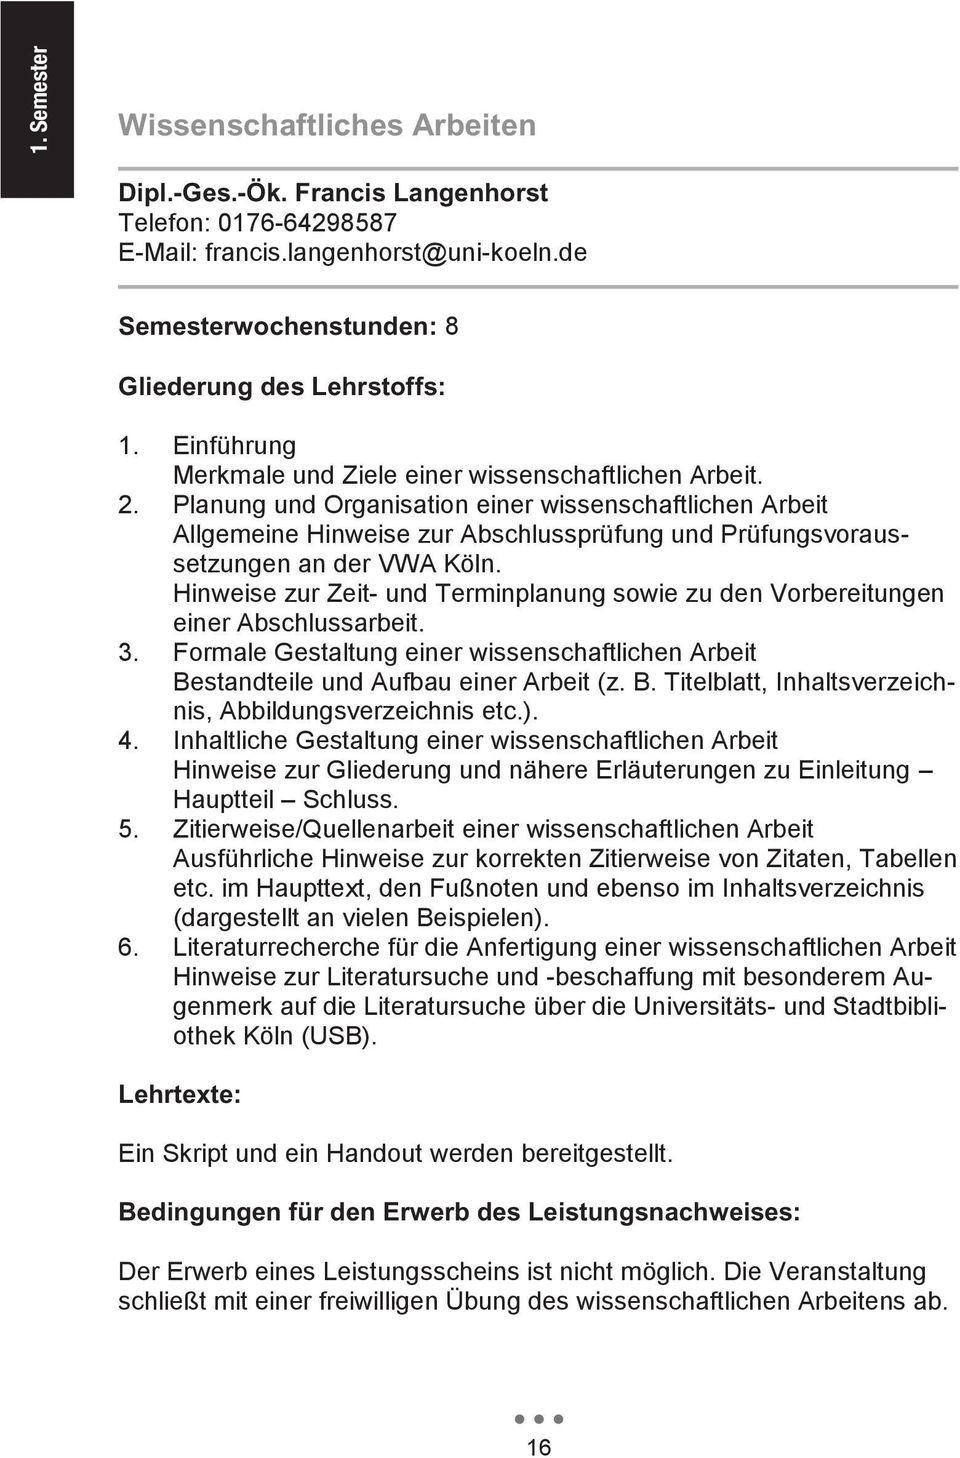 Planung und Organisation einer wissenschaftlichen Arbeit Allgemeine Hinweise zur Abschlussprüfung und Prüfungsvoraussetzungen an der VWA Köln.